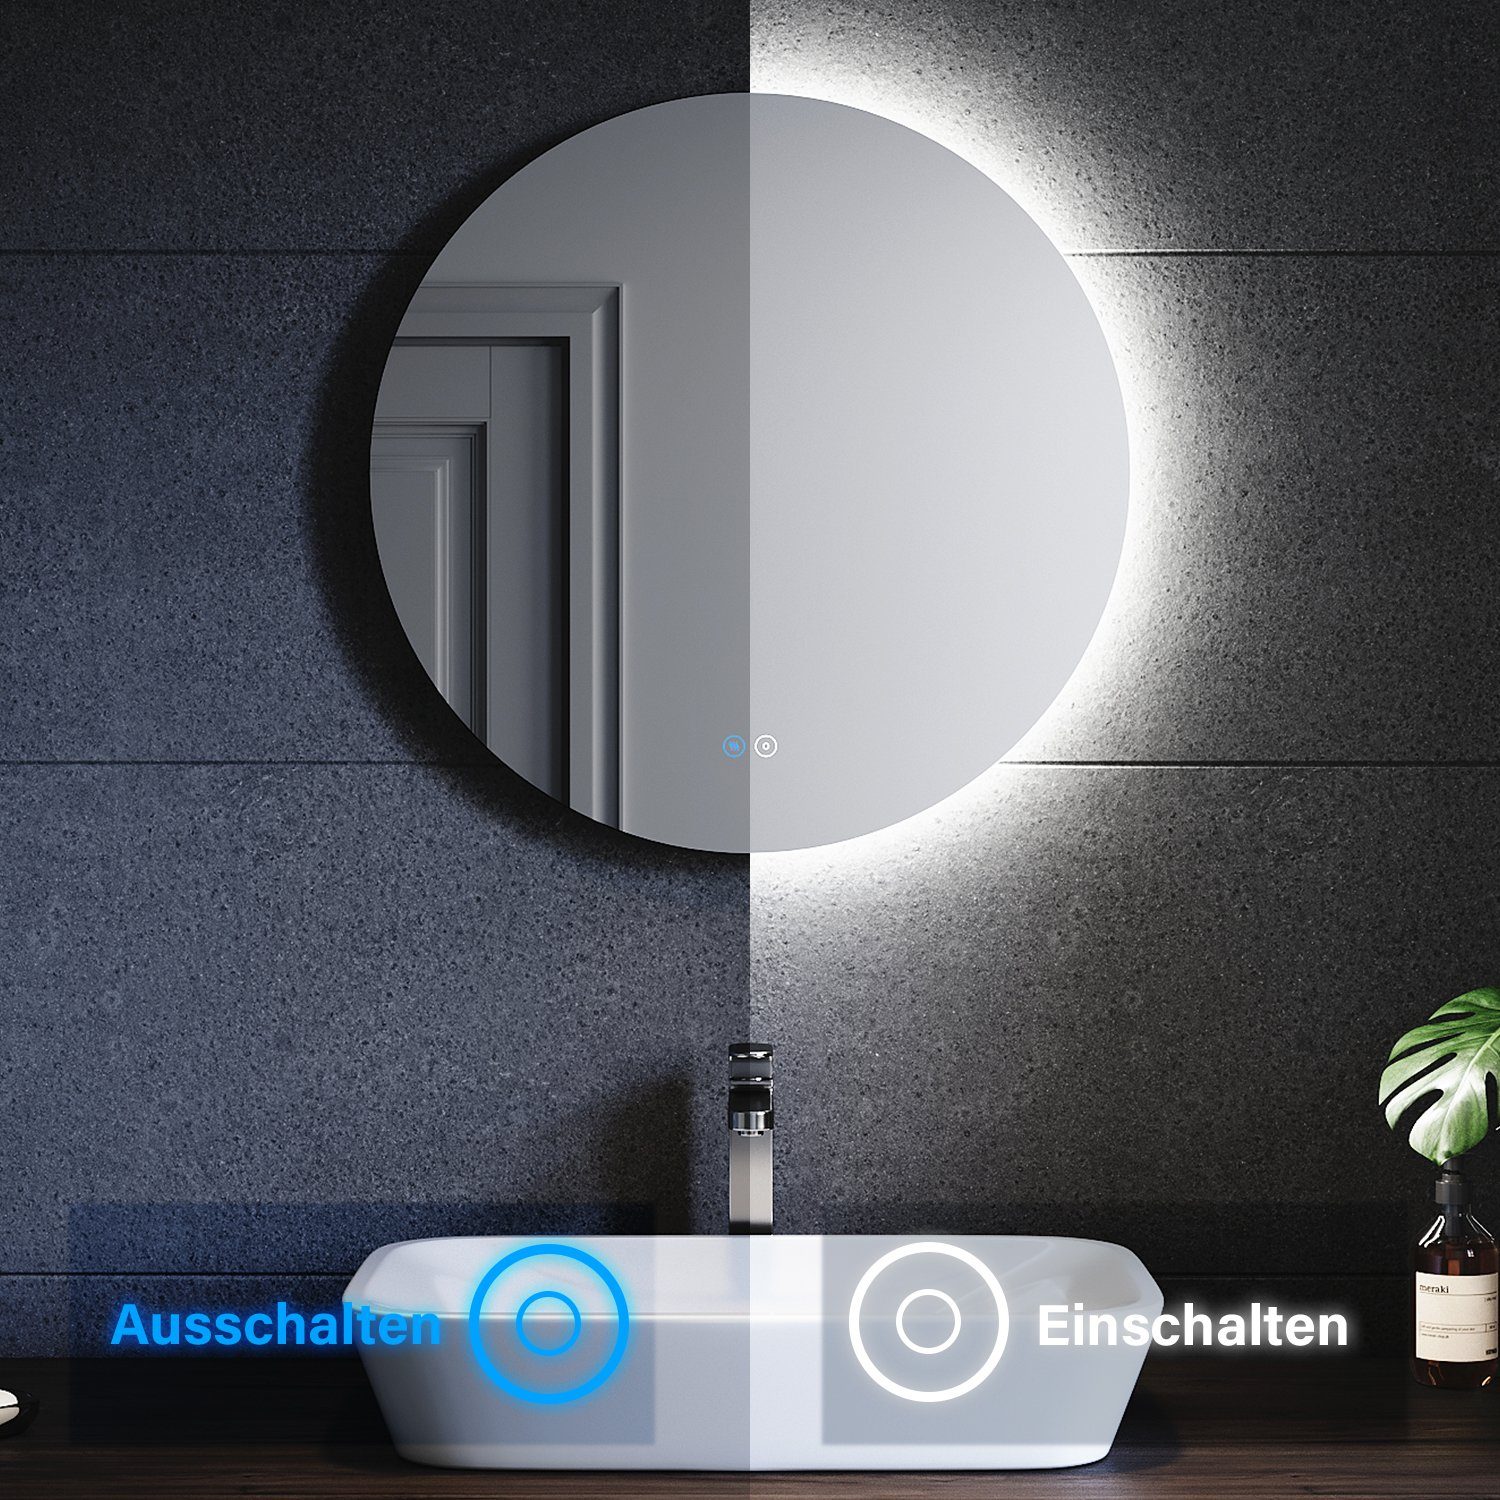 SONNI Badspiegel Rund 80 Beschlagfrei-Funktion, Beleuchtung, Energiesparend Ø cm / Ø mit Badezimmerspiegel LED, 60 Touchschalter, cm